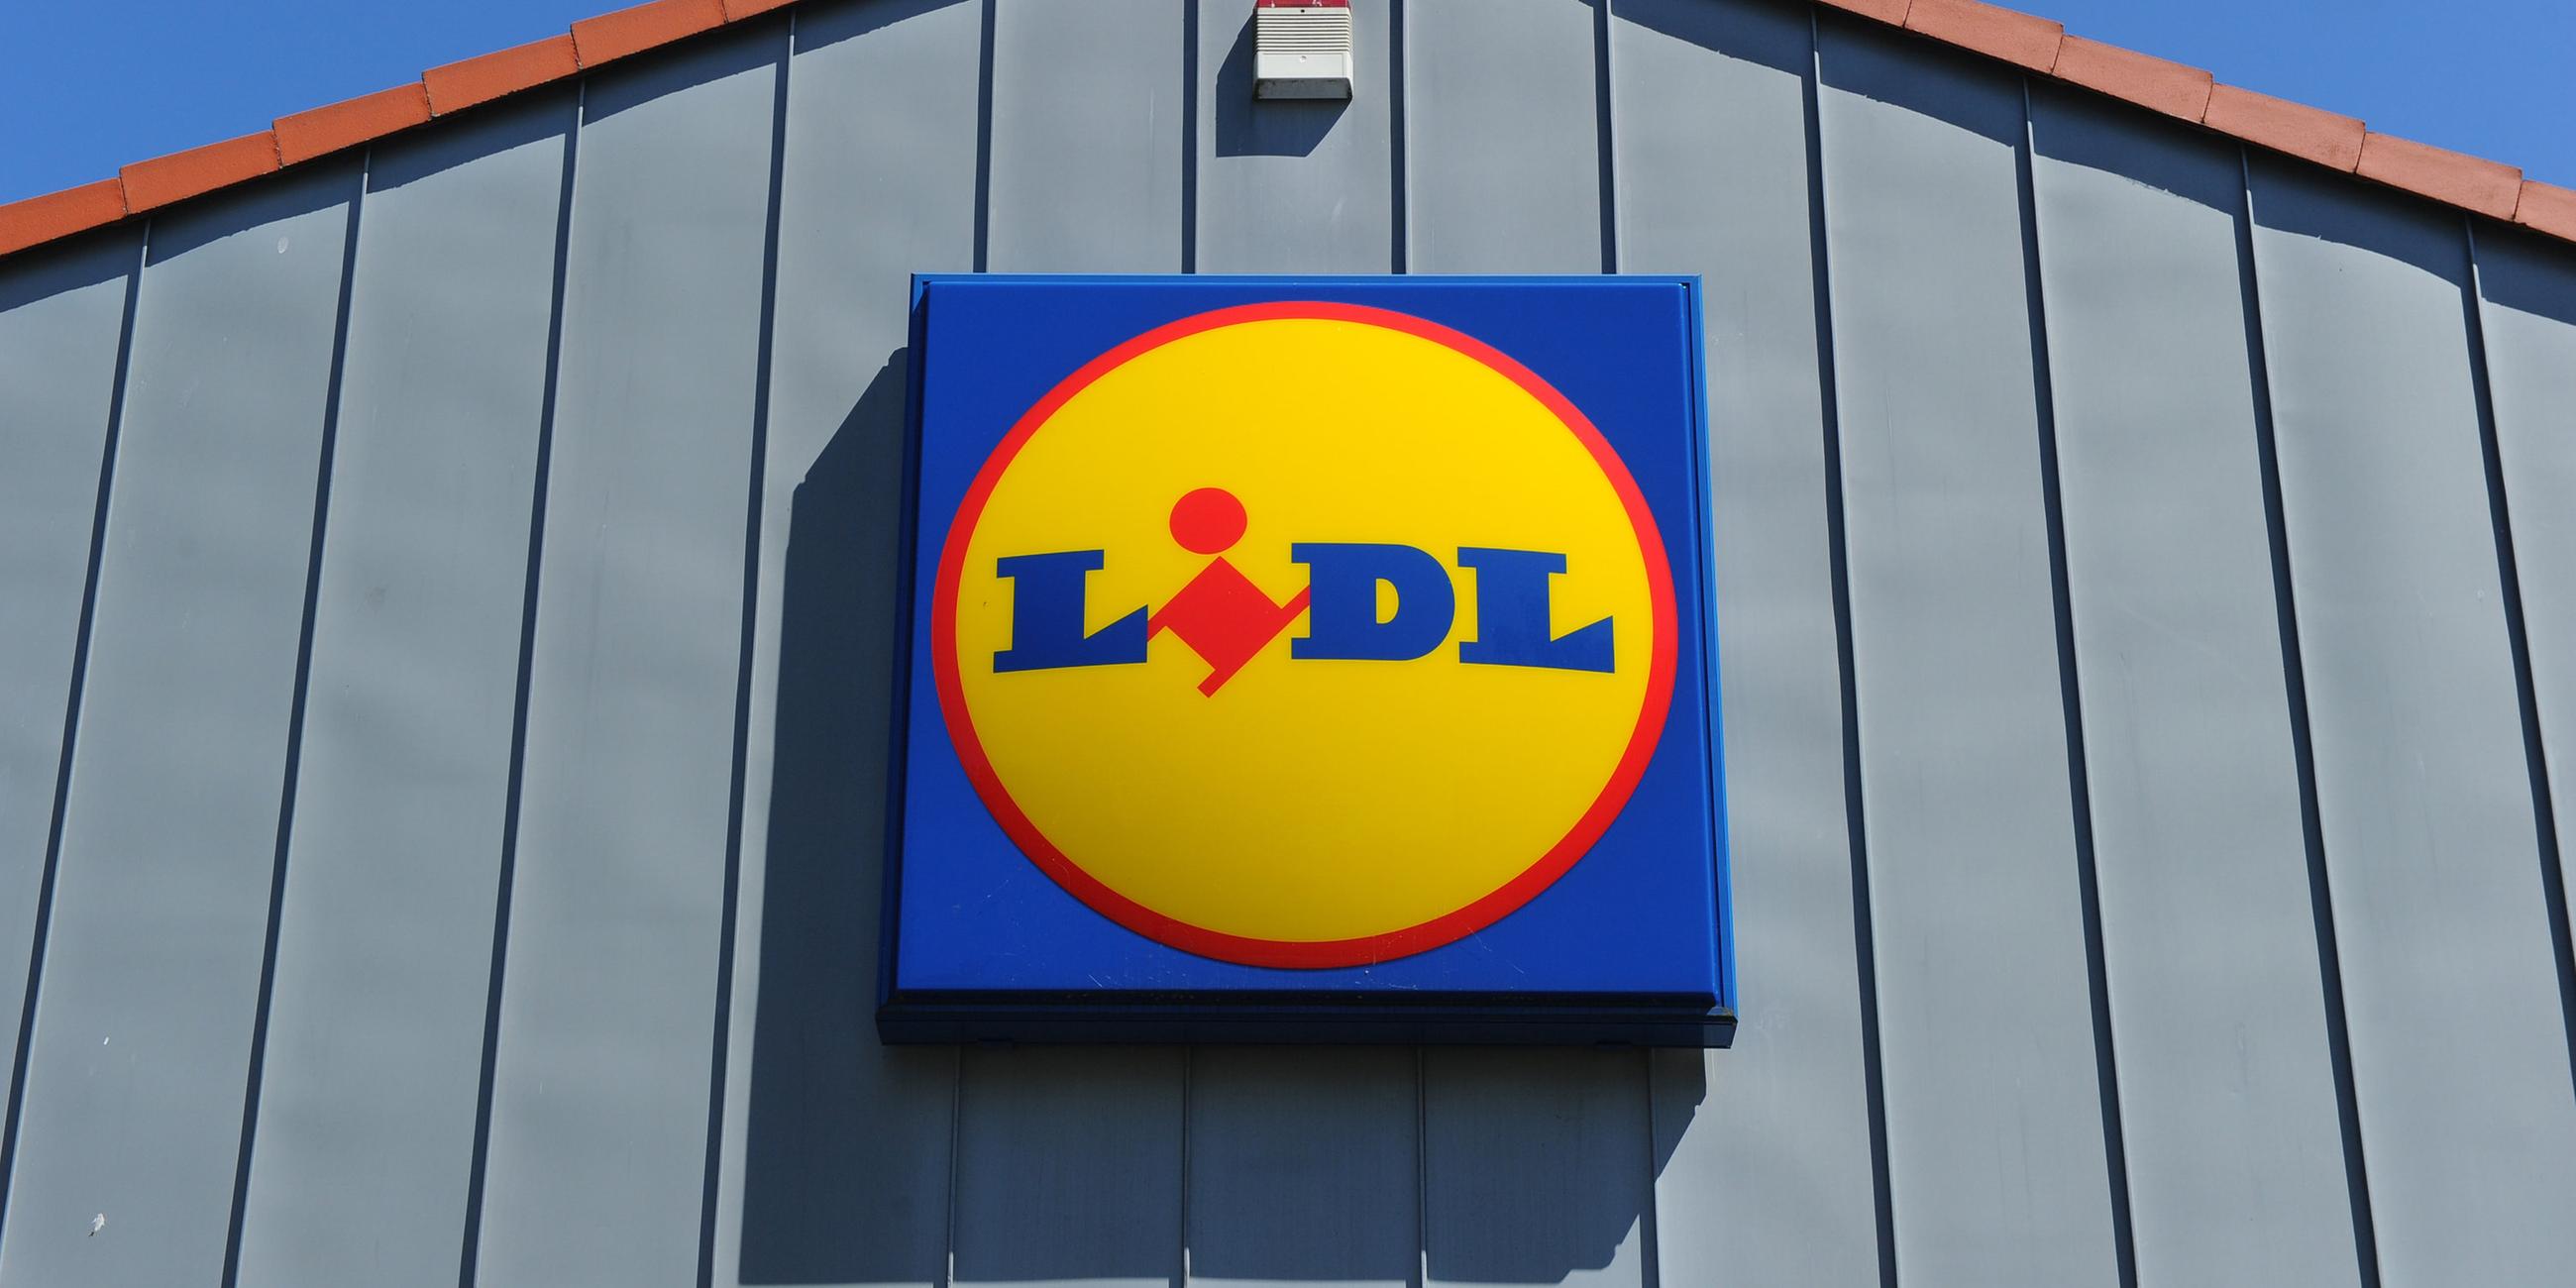 An der Wand einer Filiale hängt das Lidl-Logo.